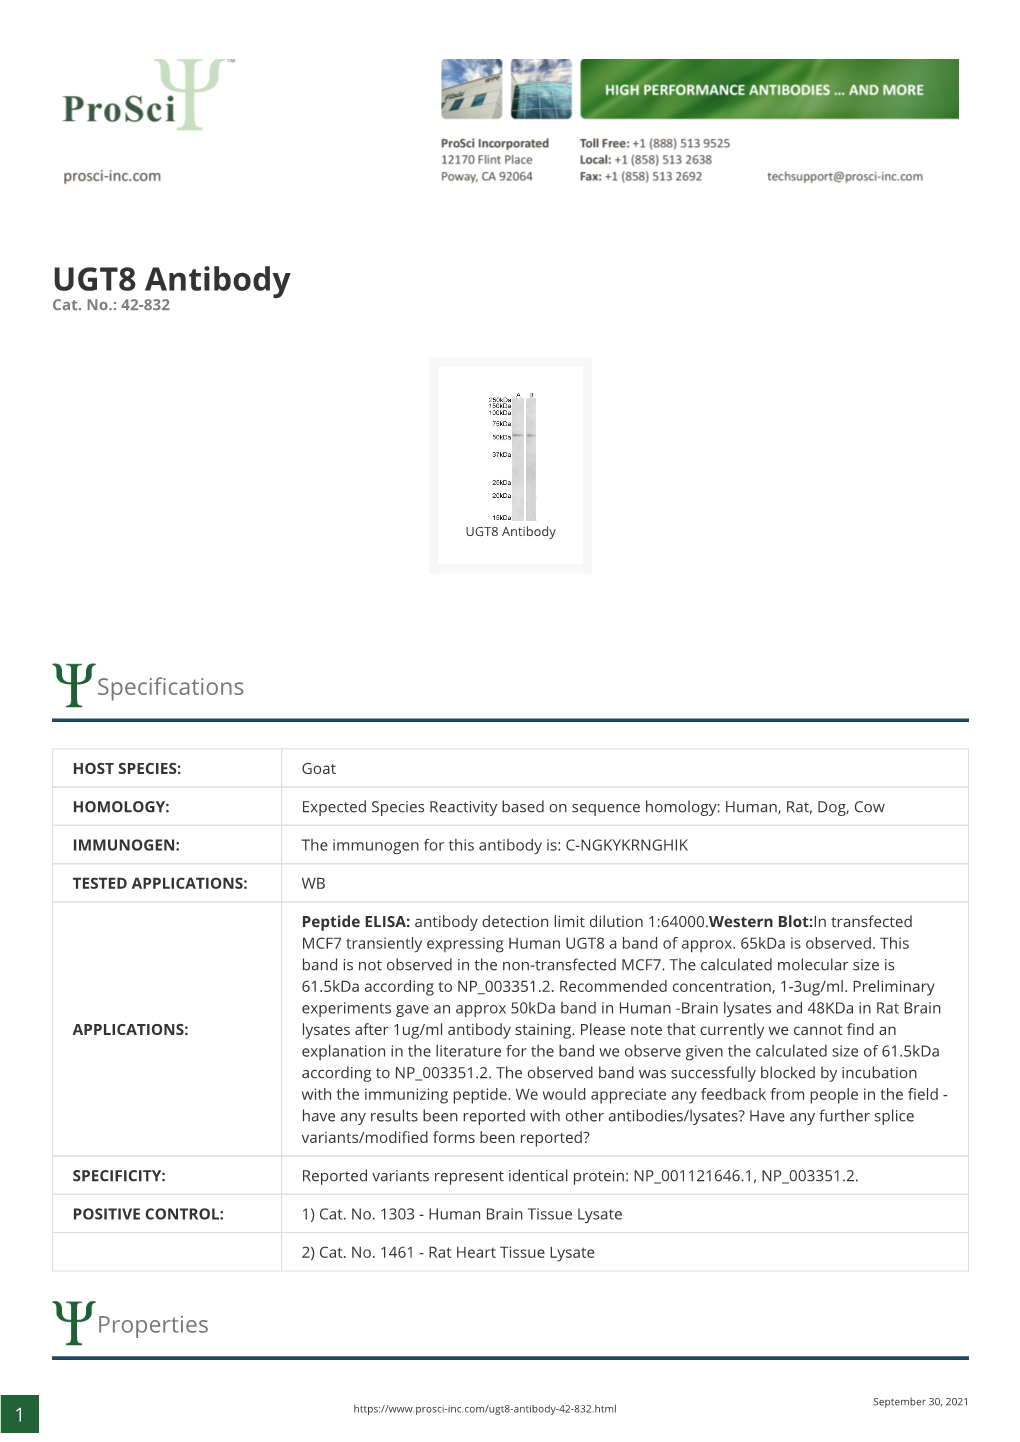 UGT8 Antibody Cat